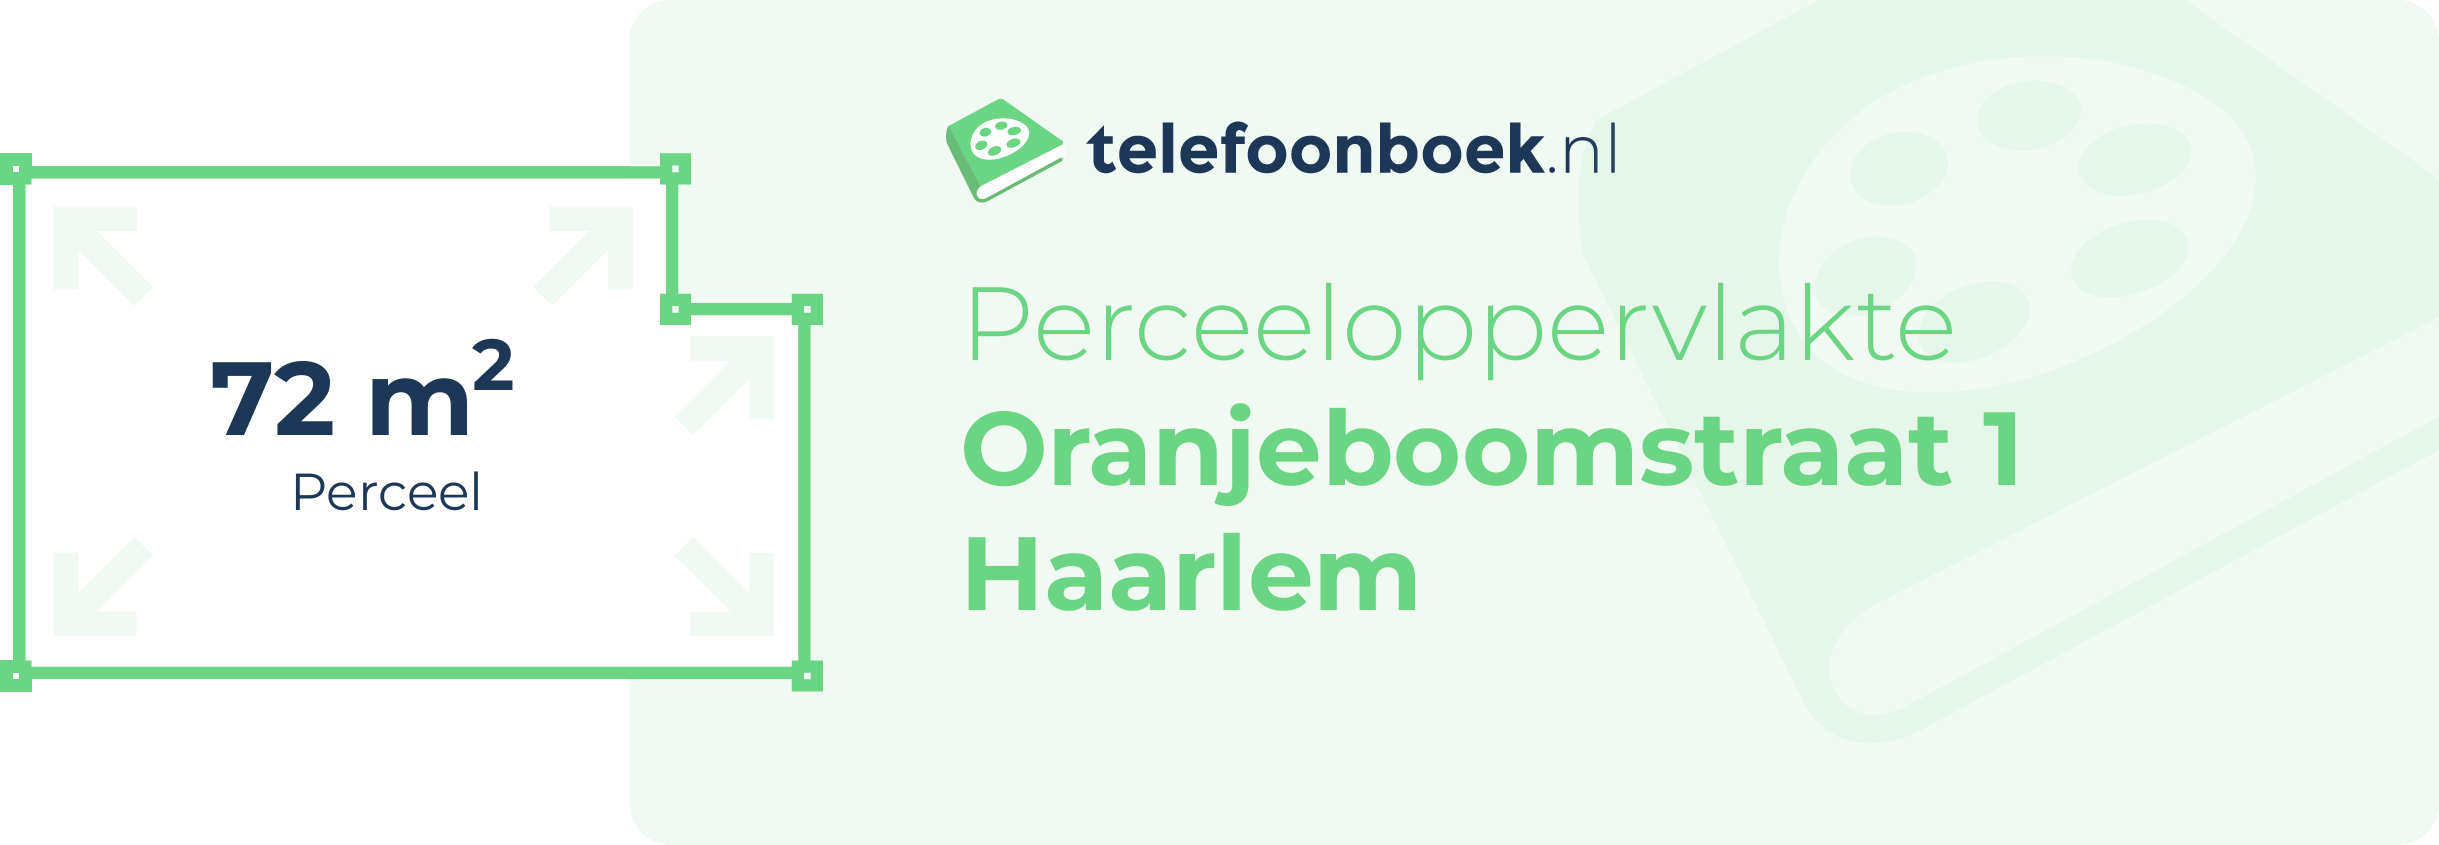 Perceeloppervlakte Oranjeboomstraat 1 Haarlem